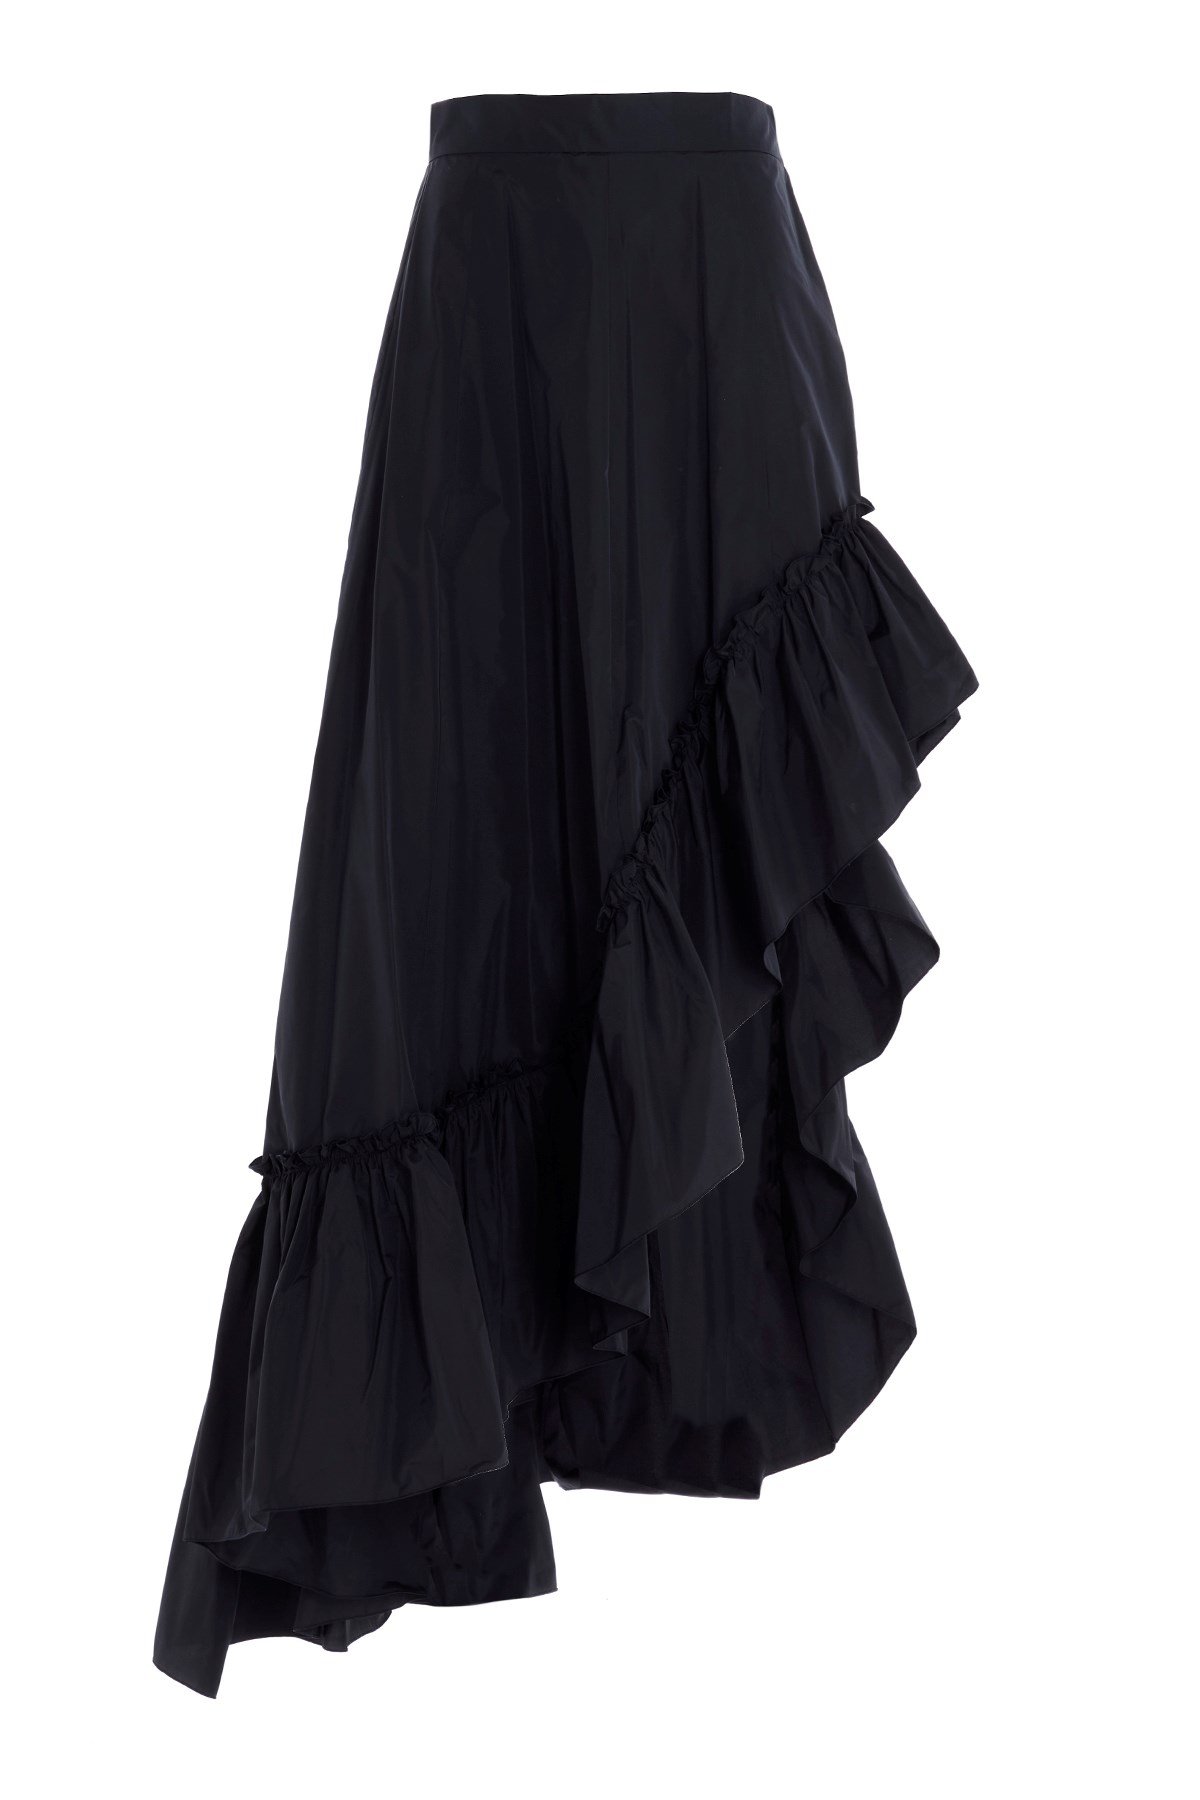 MAX MARA 'Carrara' Skirt